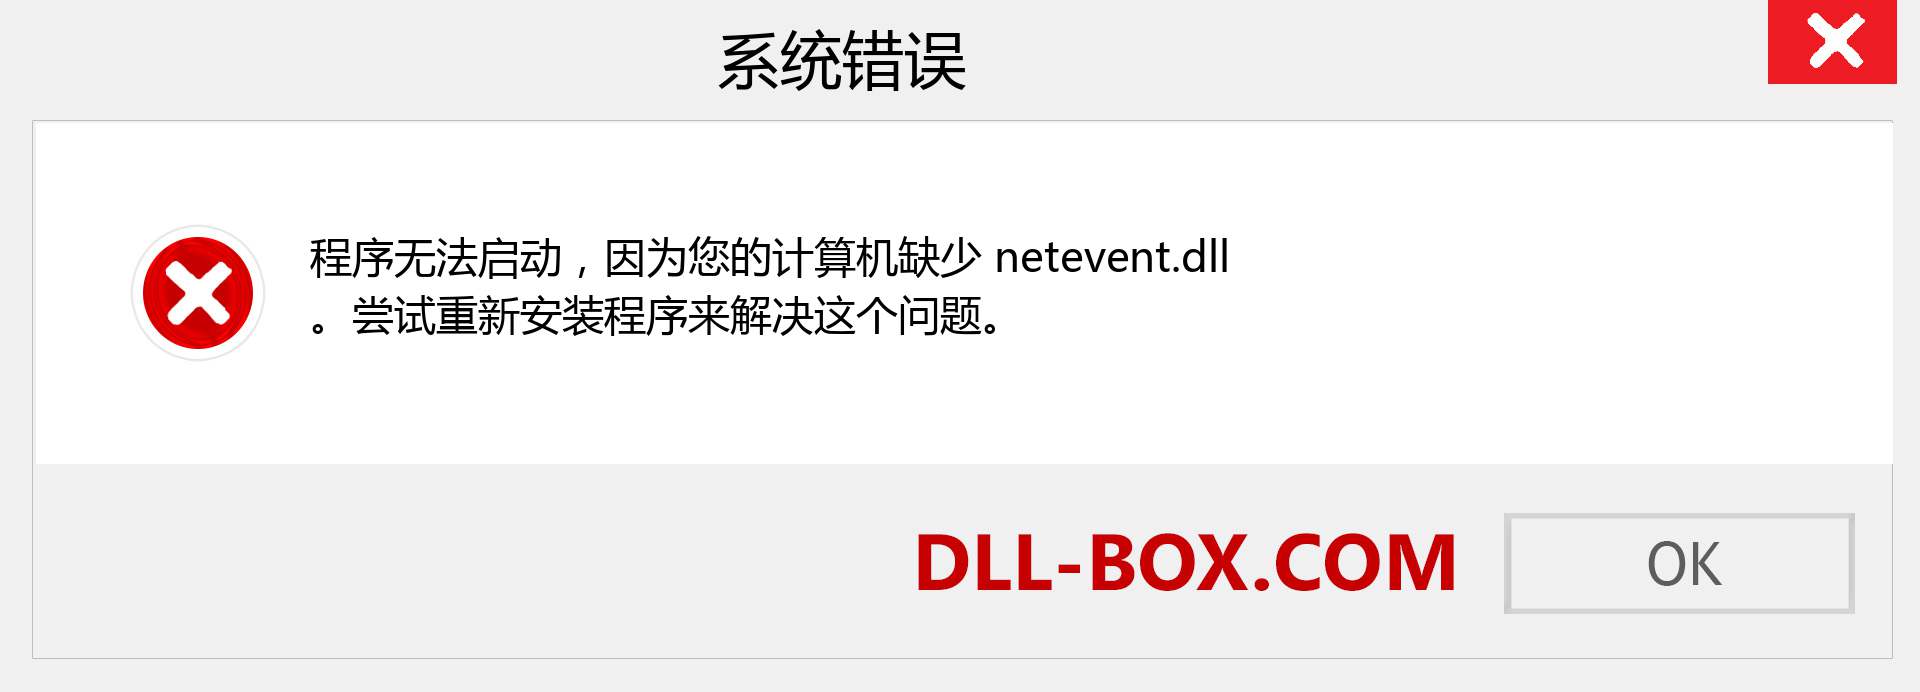 netevent.dll 文件丢失？。 适用于 Windows 7、8、10 的下载 - 修复 Windows、照片、图像上的 netevent dll 丢失错误